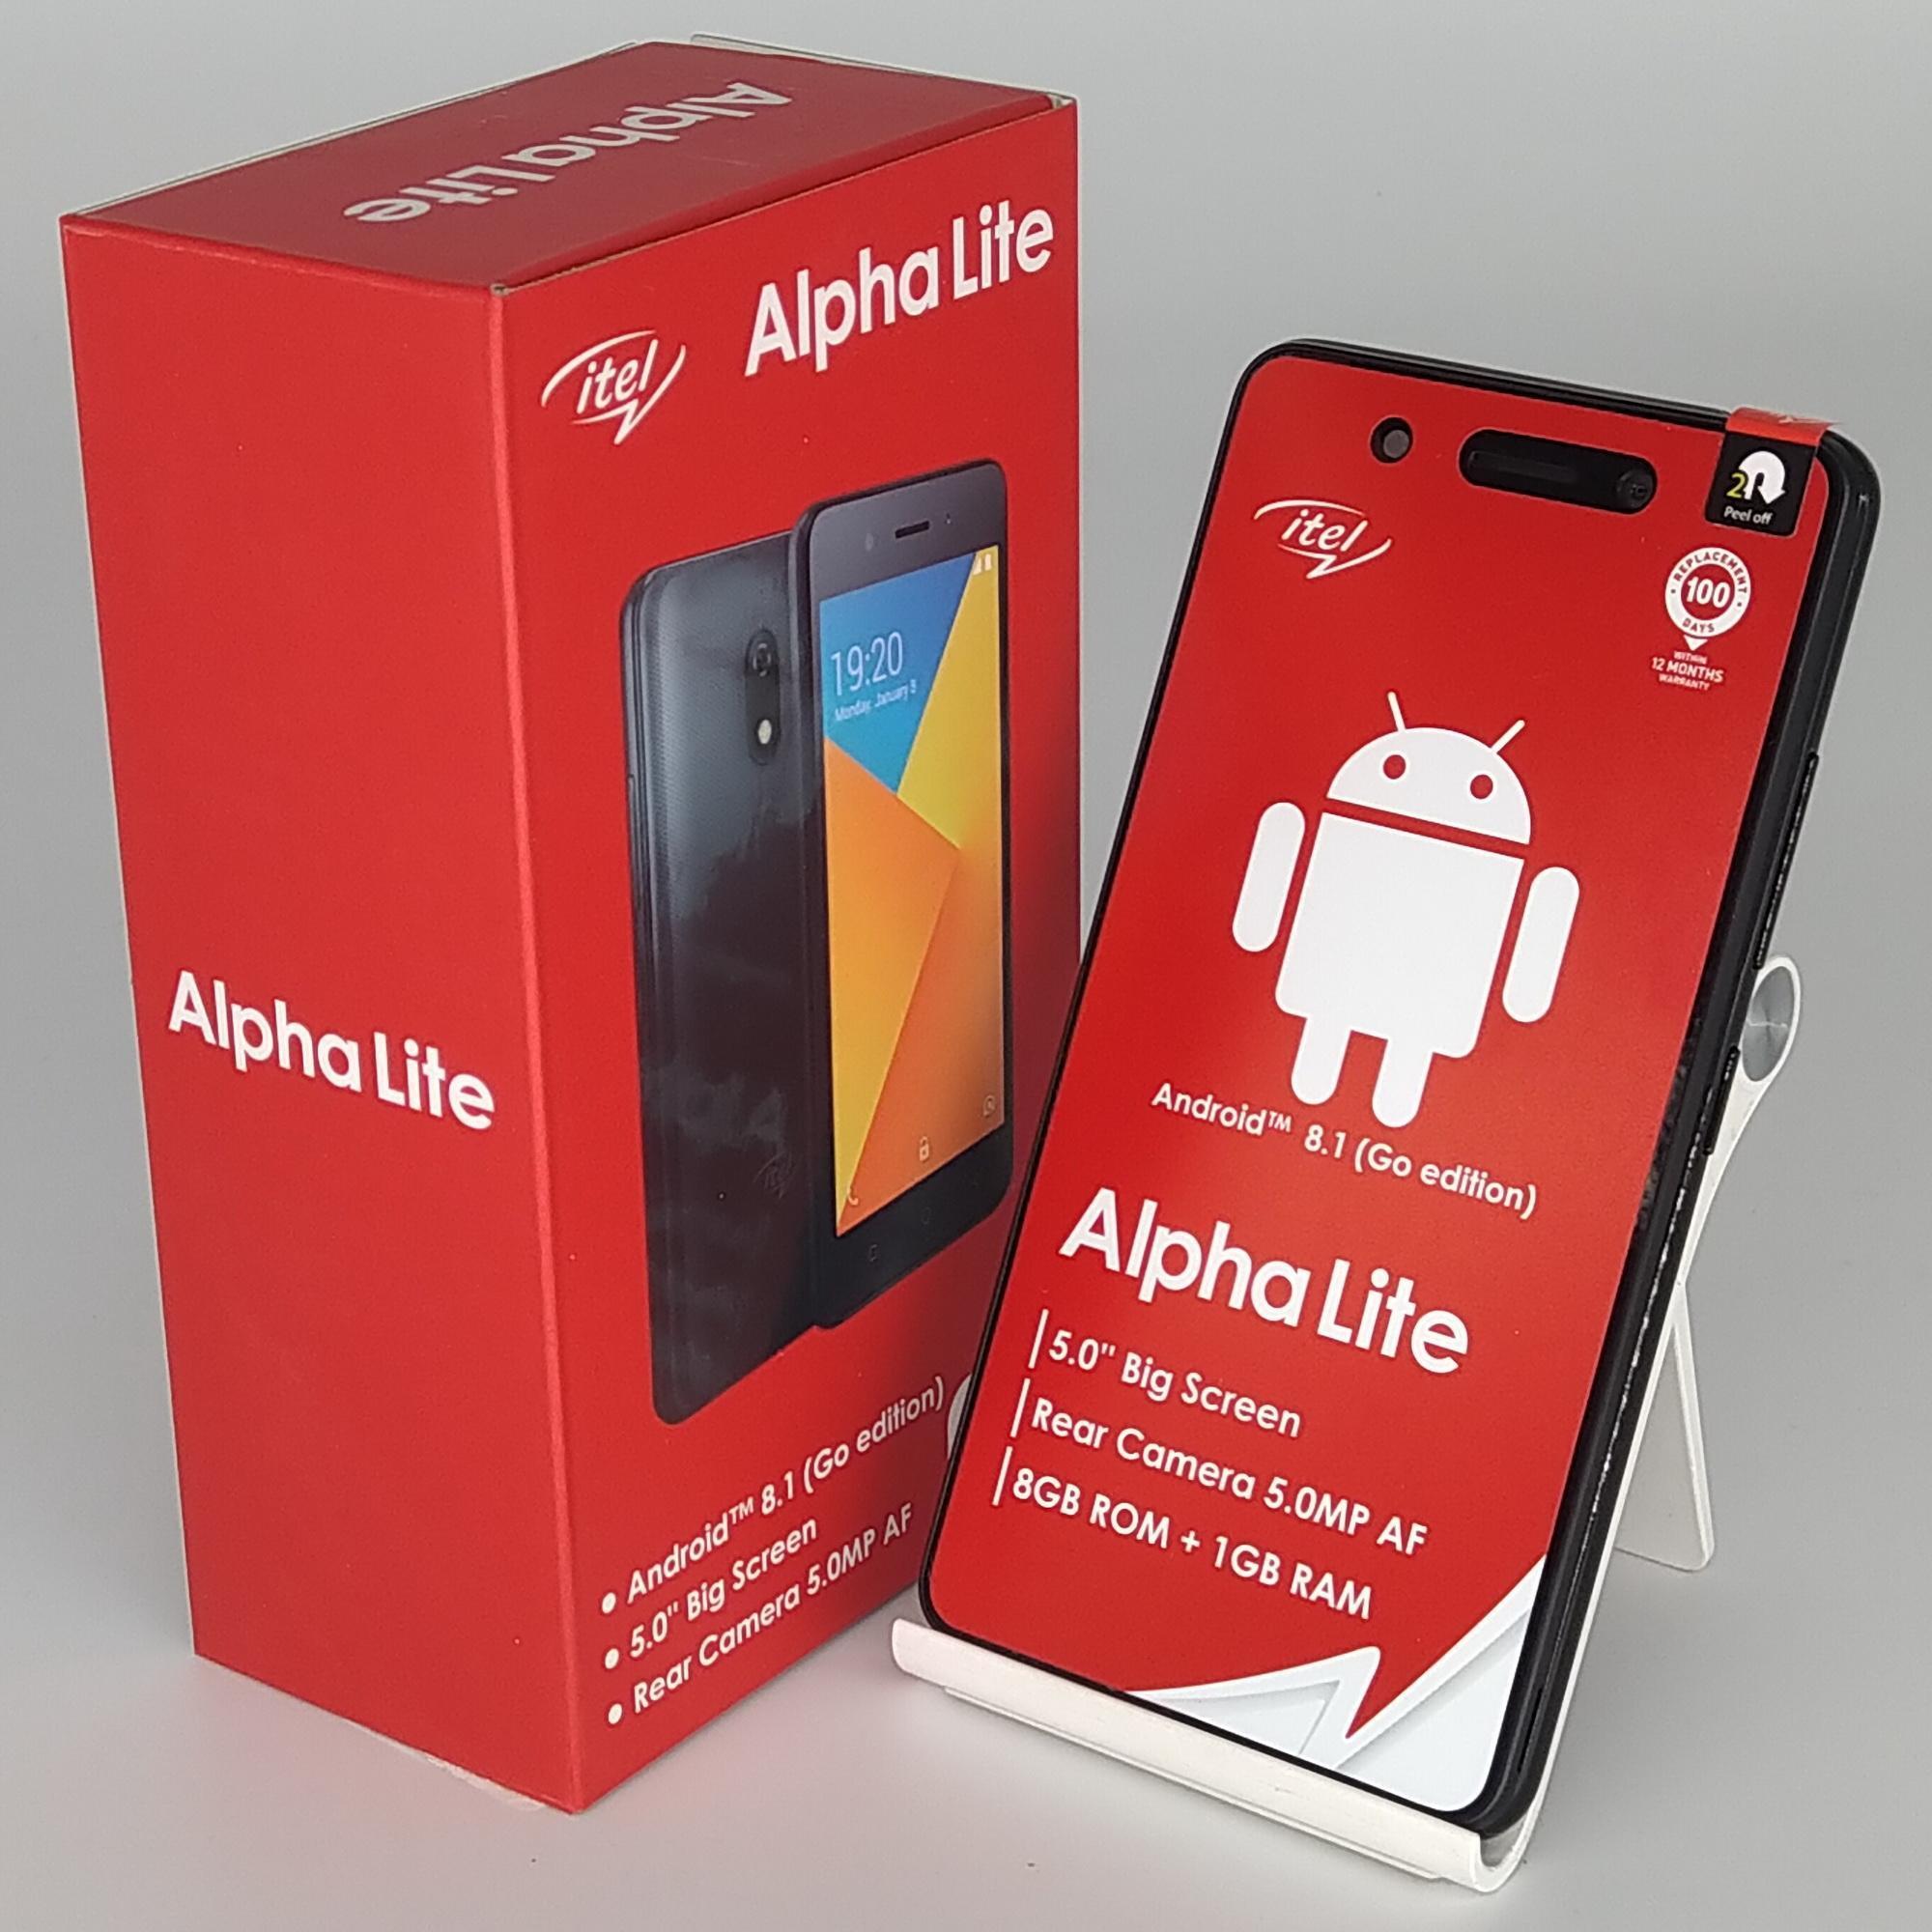 Điện thoại Itel Alpha Lite - 1GB RAM, 8GB, 5 inch